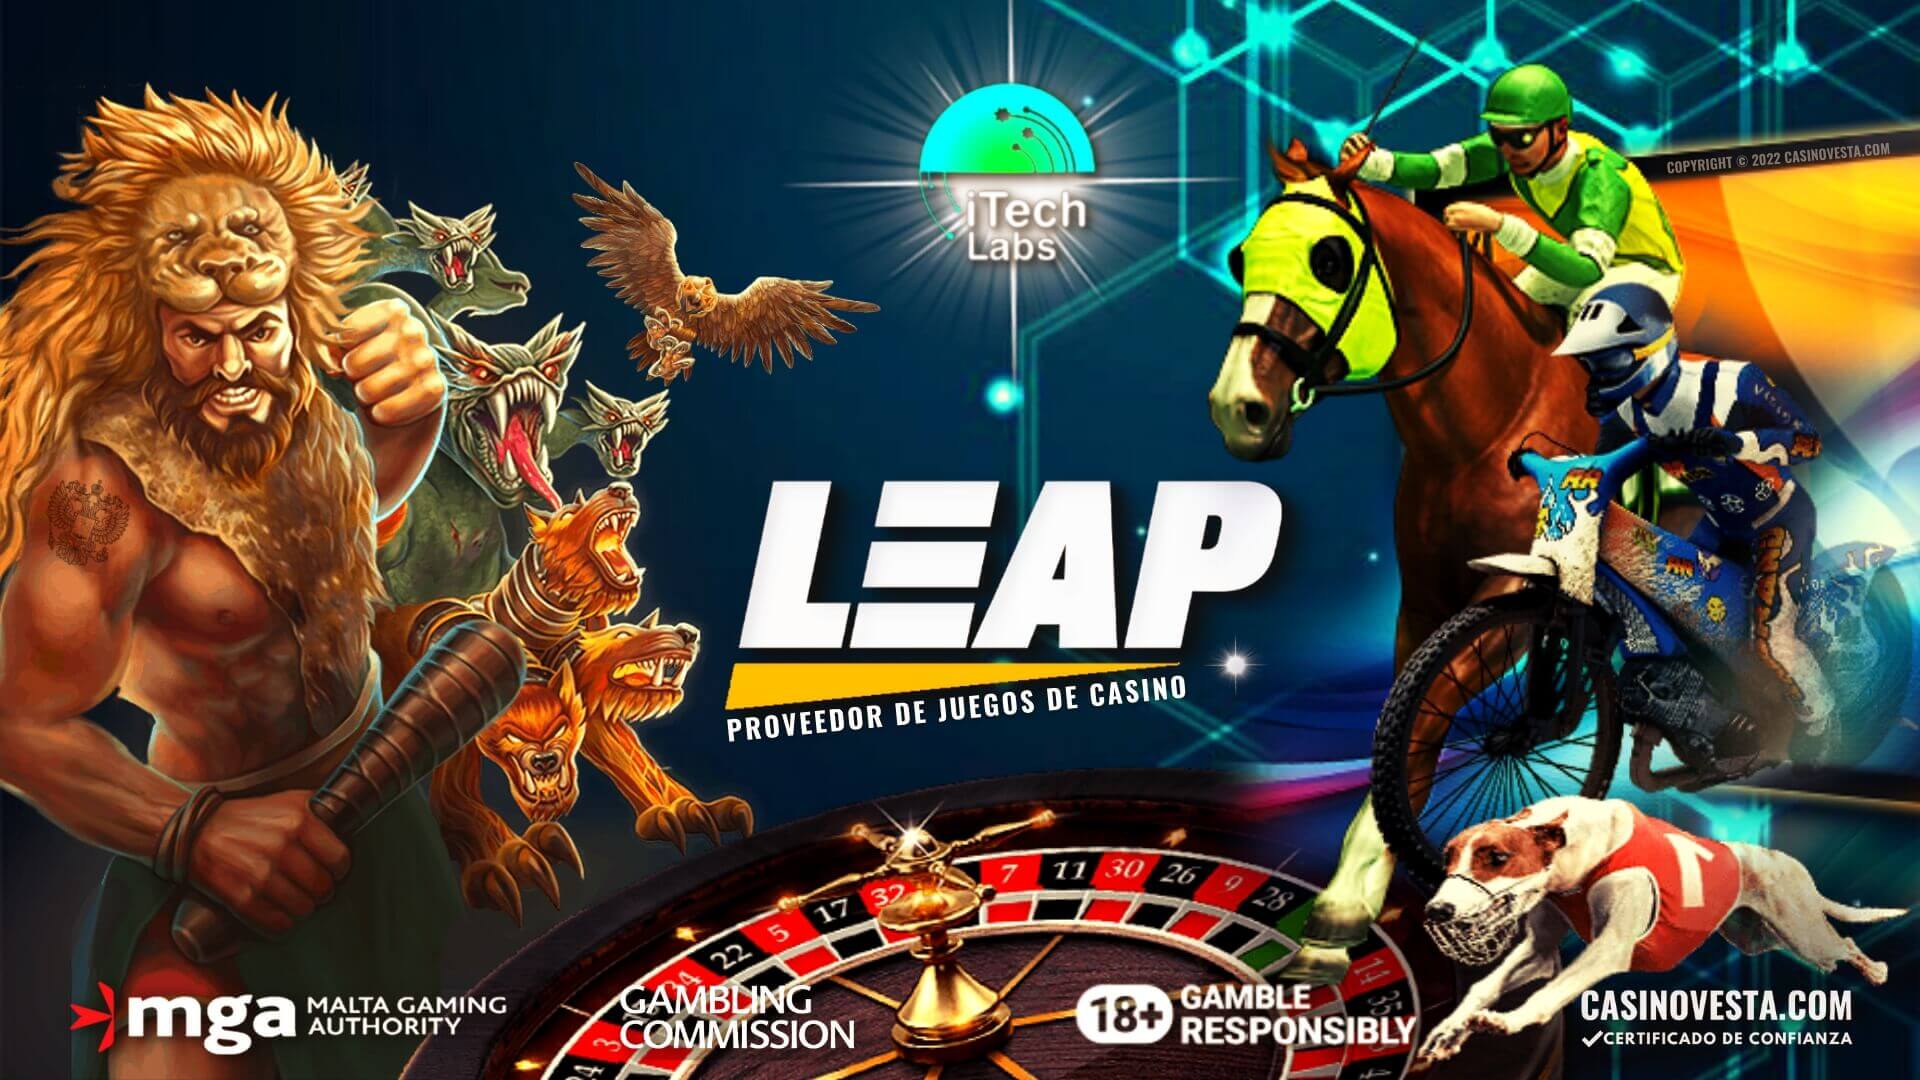 Revisión del proveedor de juegos de casino online Leap Gaming